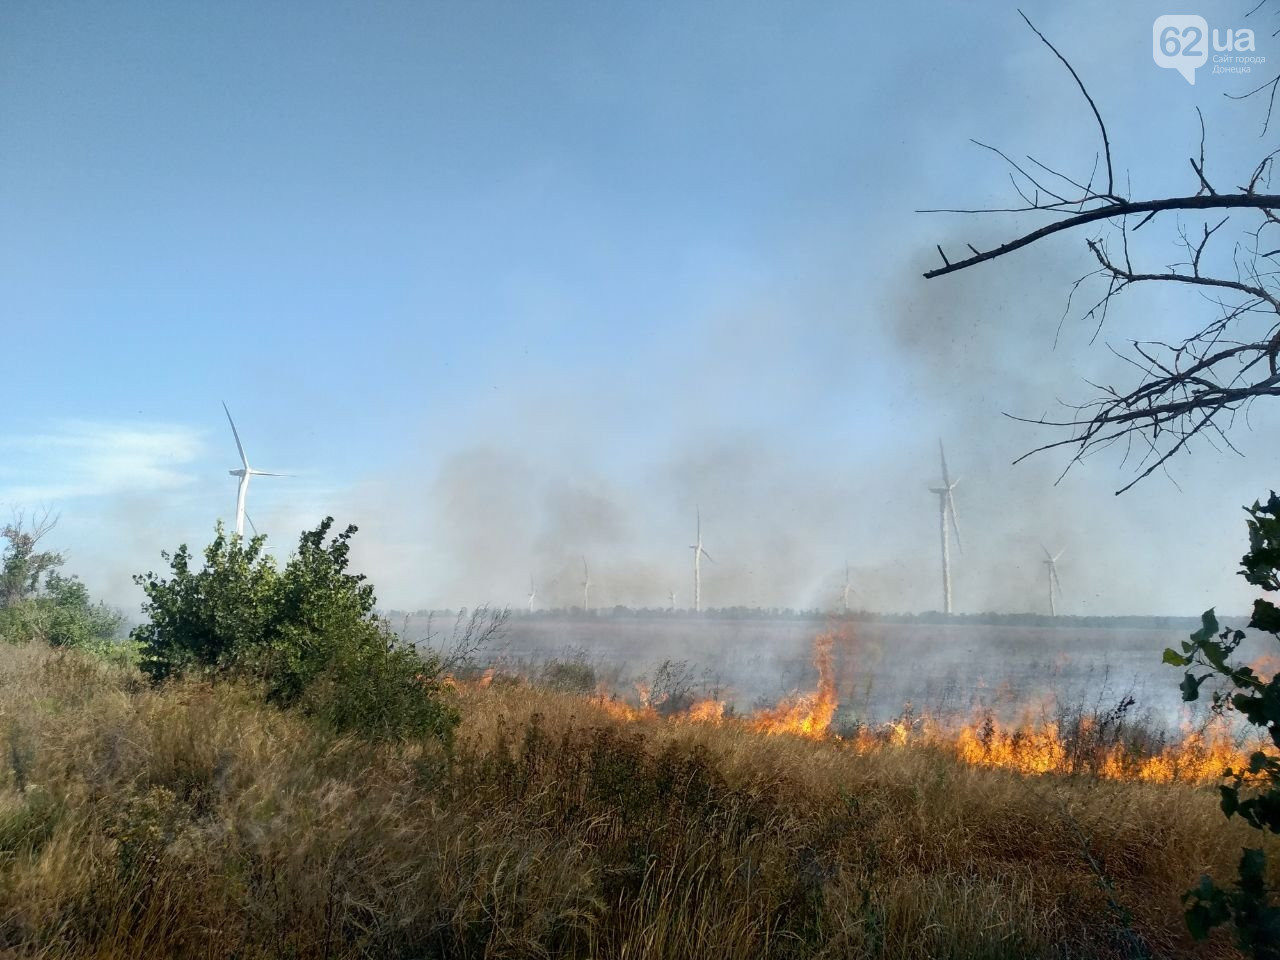 Ветровая электростанция за миллионы долларов охвачена пожаром в «ДНР»